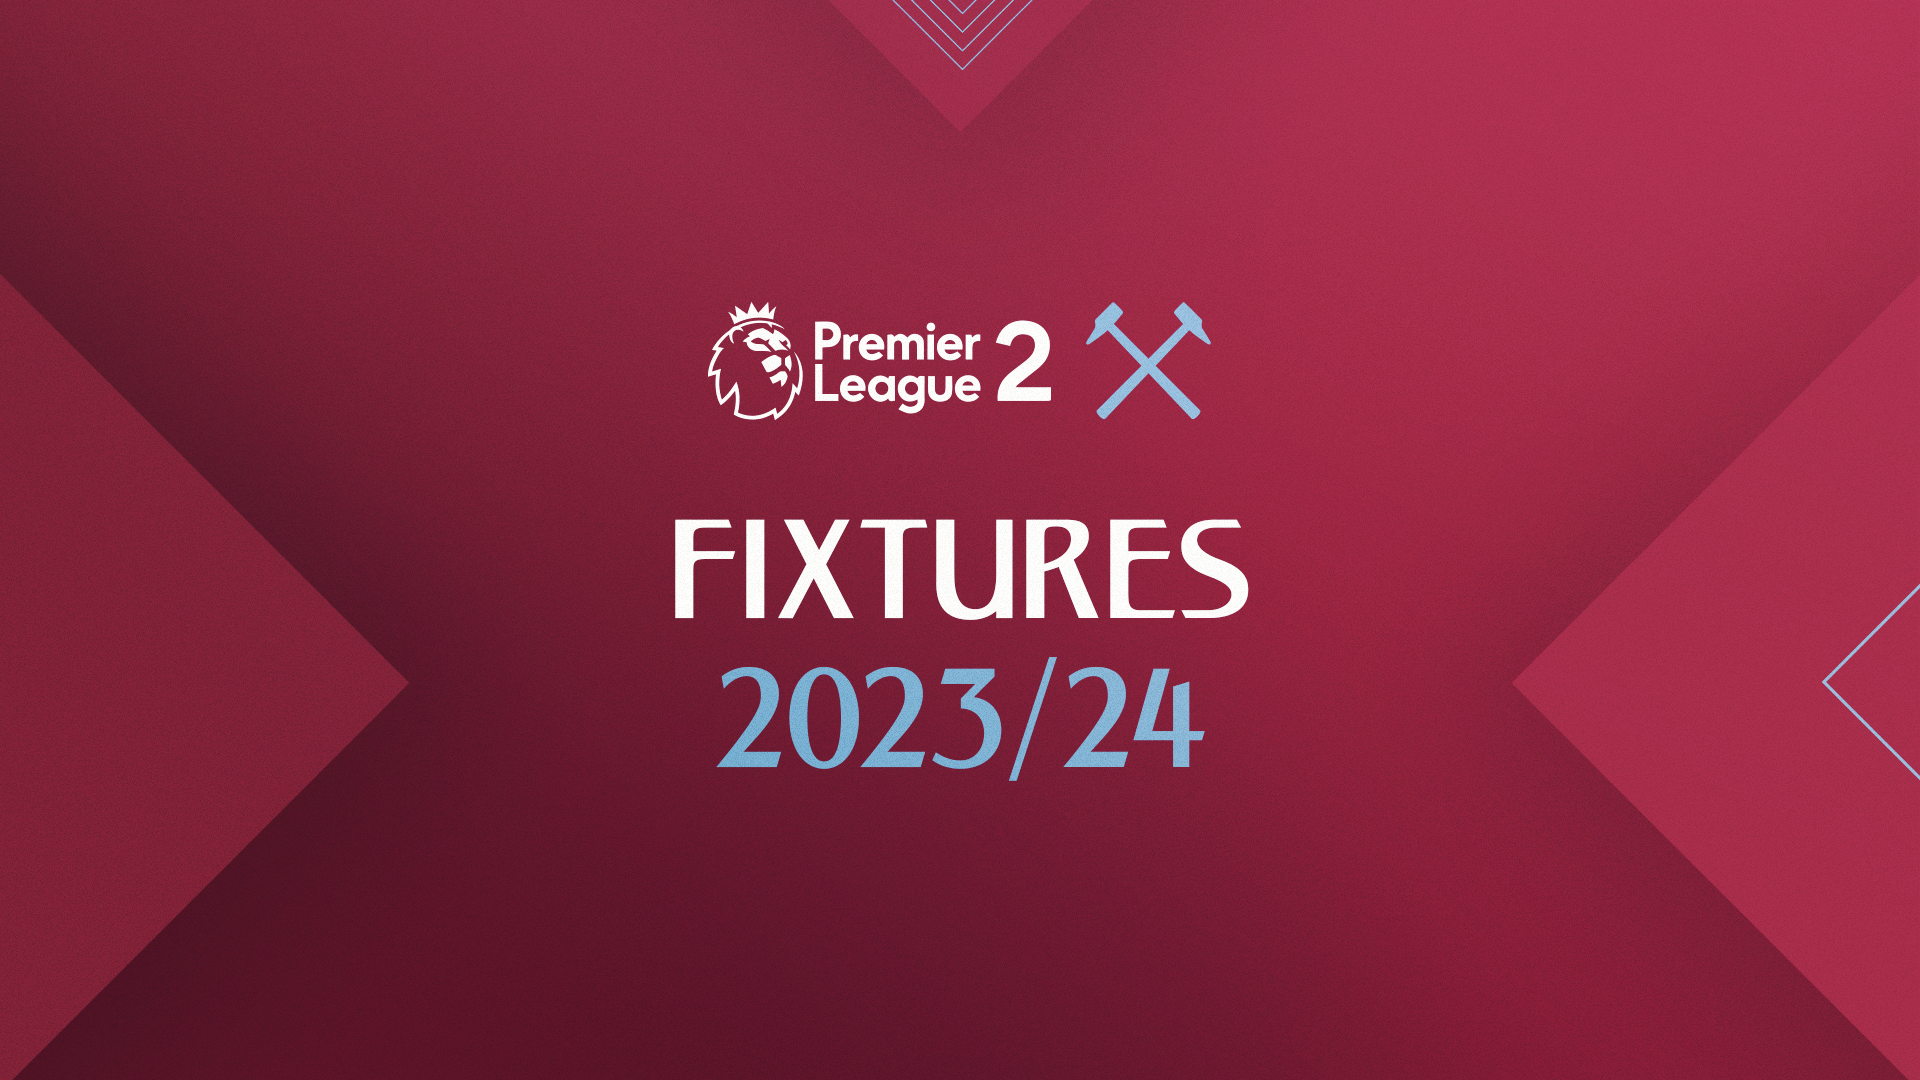 U21s Premier League 2 fixtures confirmed West Ham United F.C.